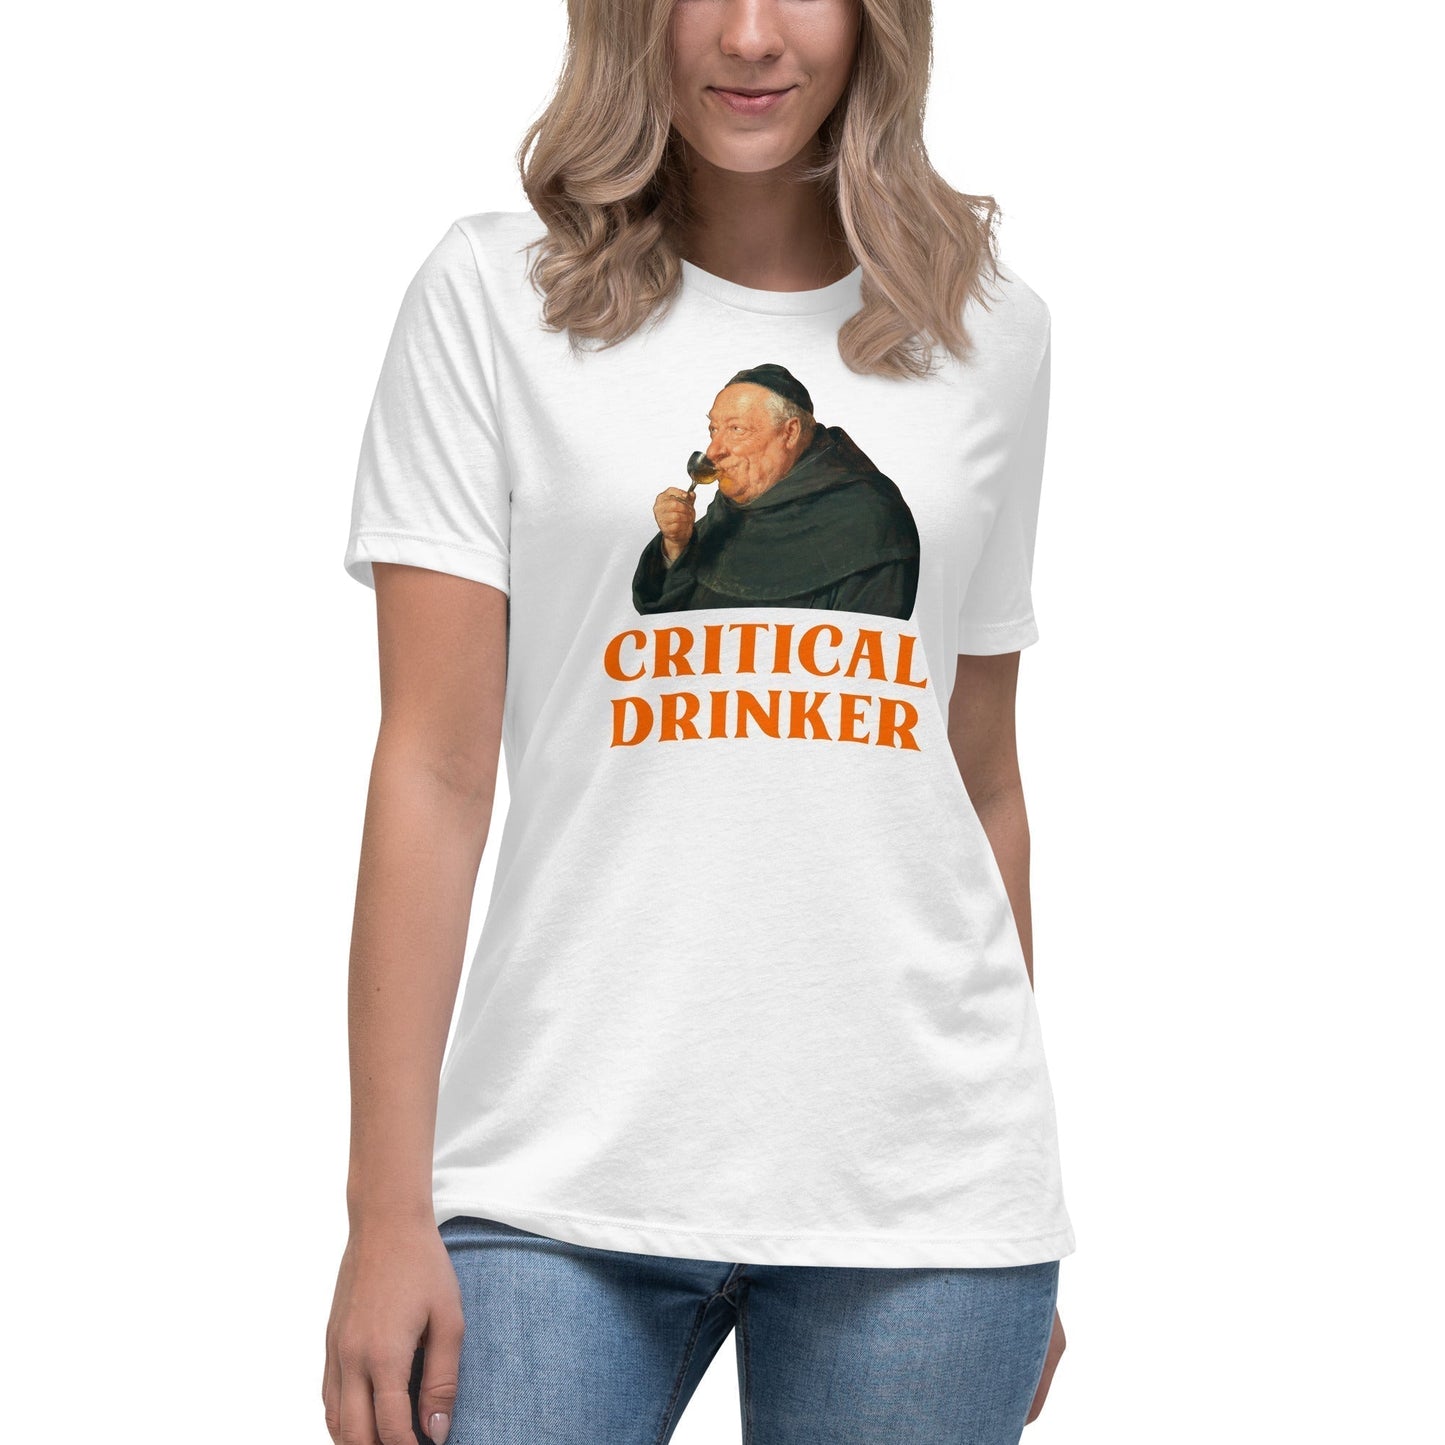 Critical Drinker - Women's T-Shirt